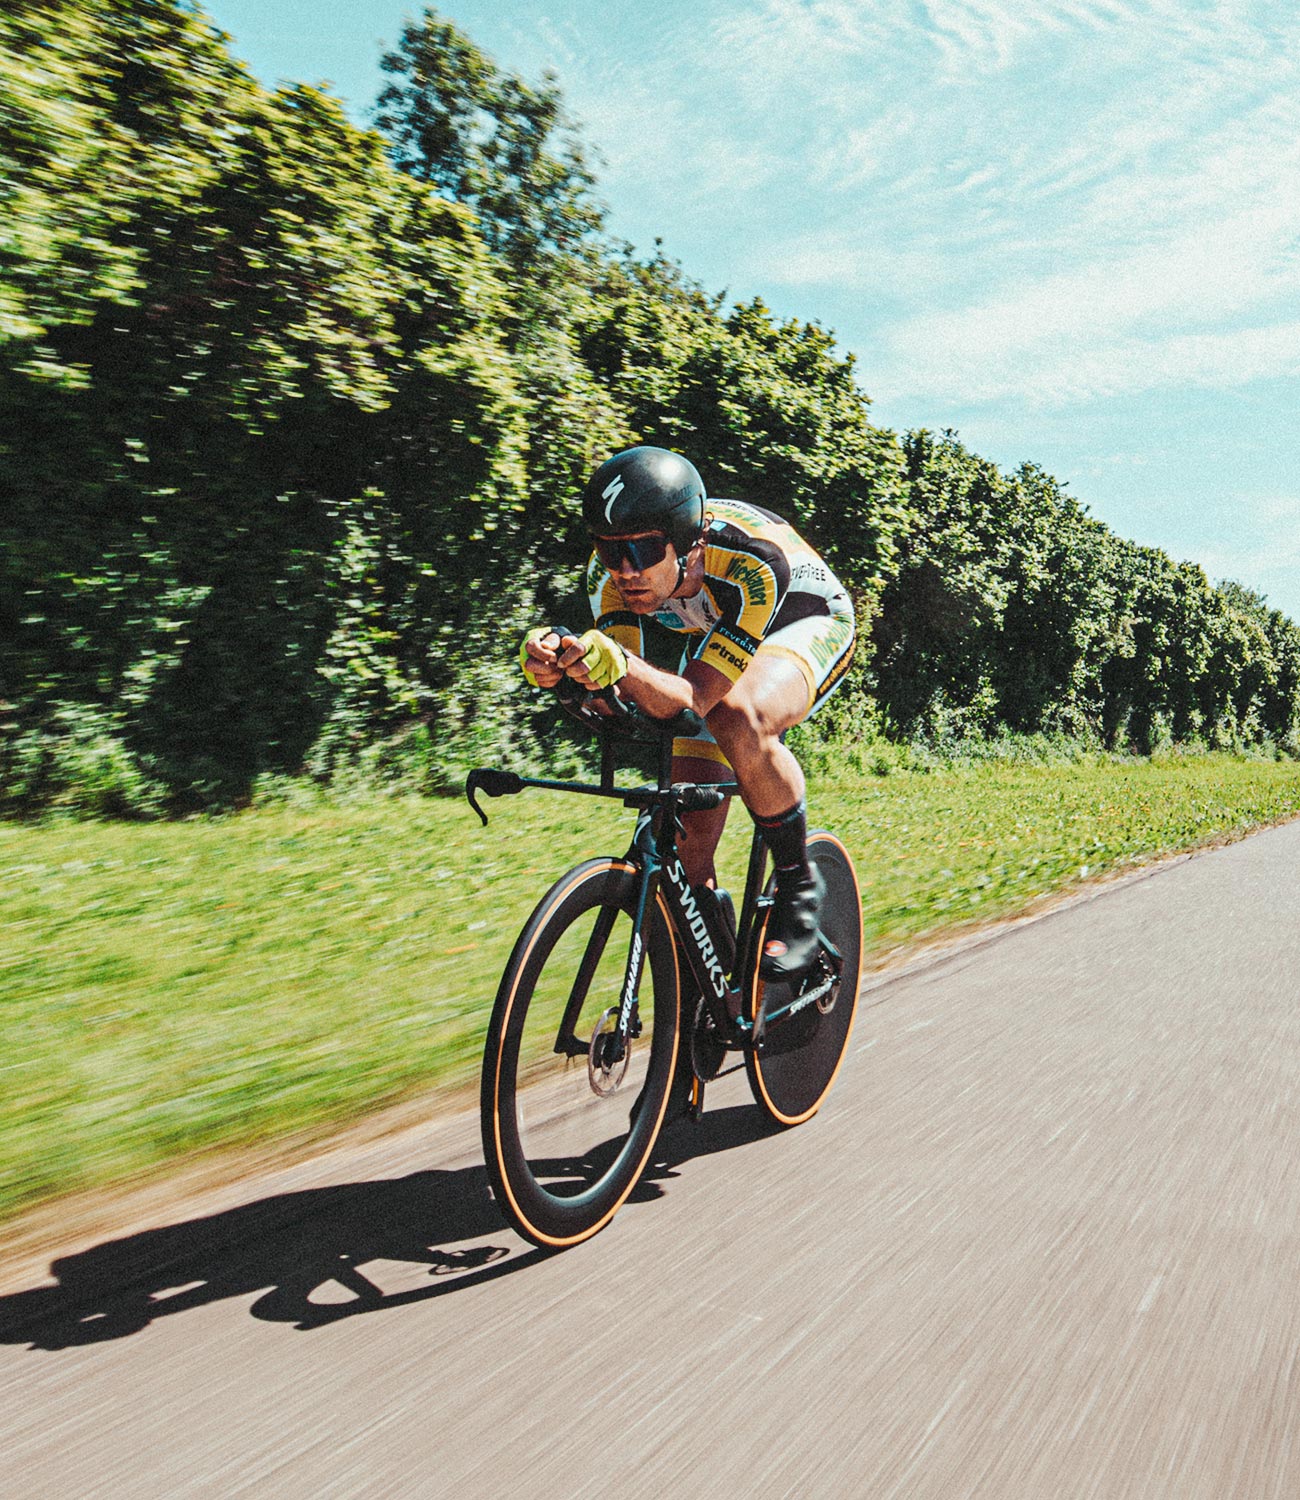 Vélo de course en mouvement sur une route, équipé d'un casque et de lunettes de soleil de cyclisme ; Christoph Strasser © Lex Karelly